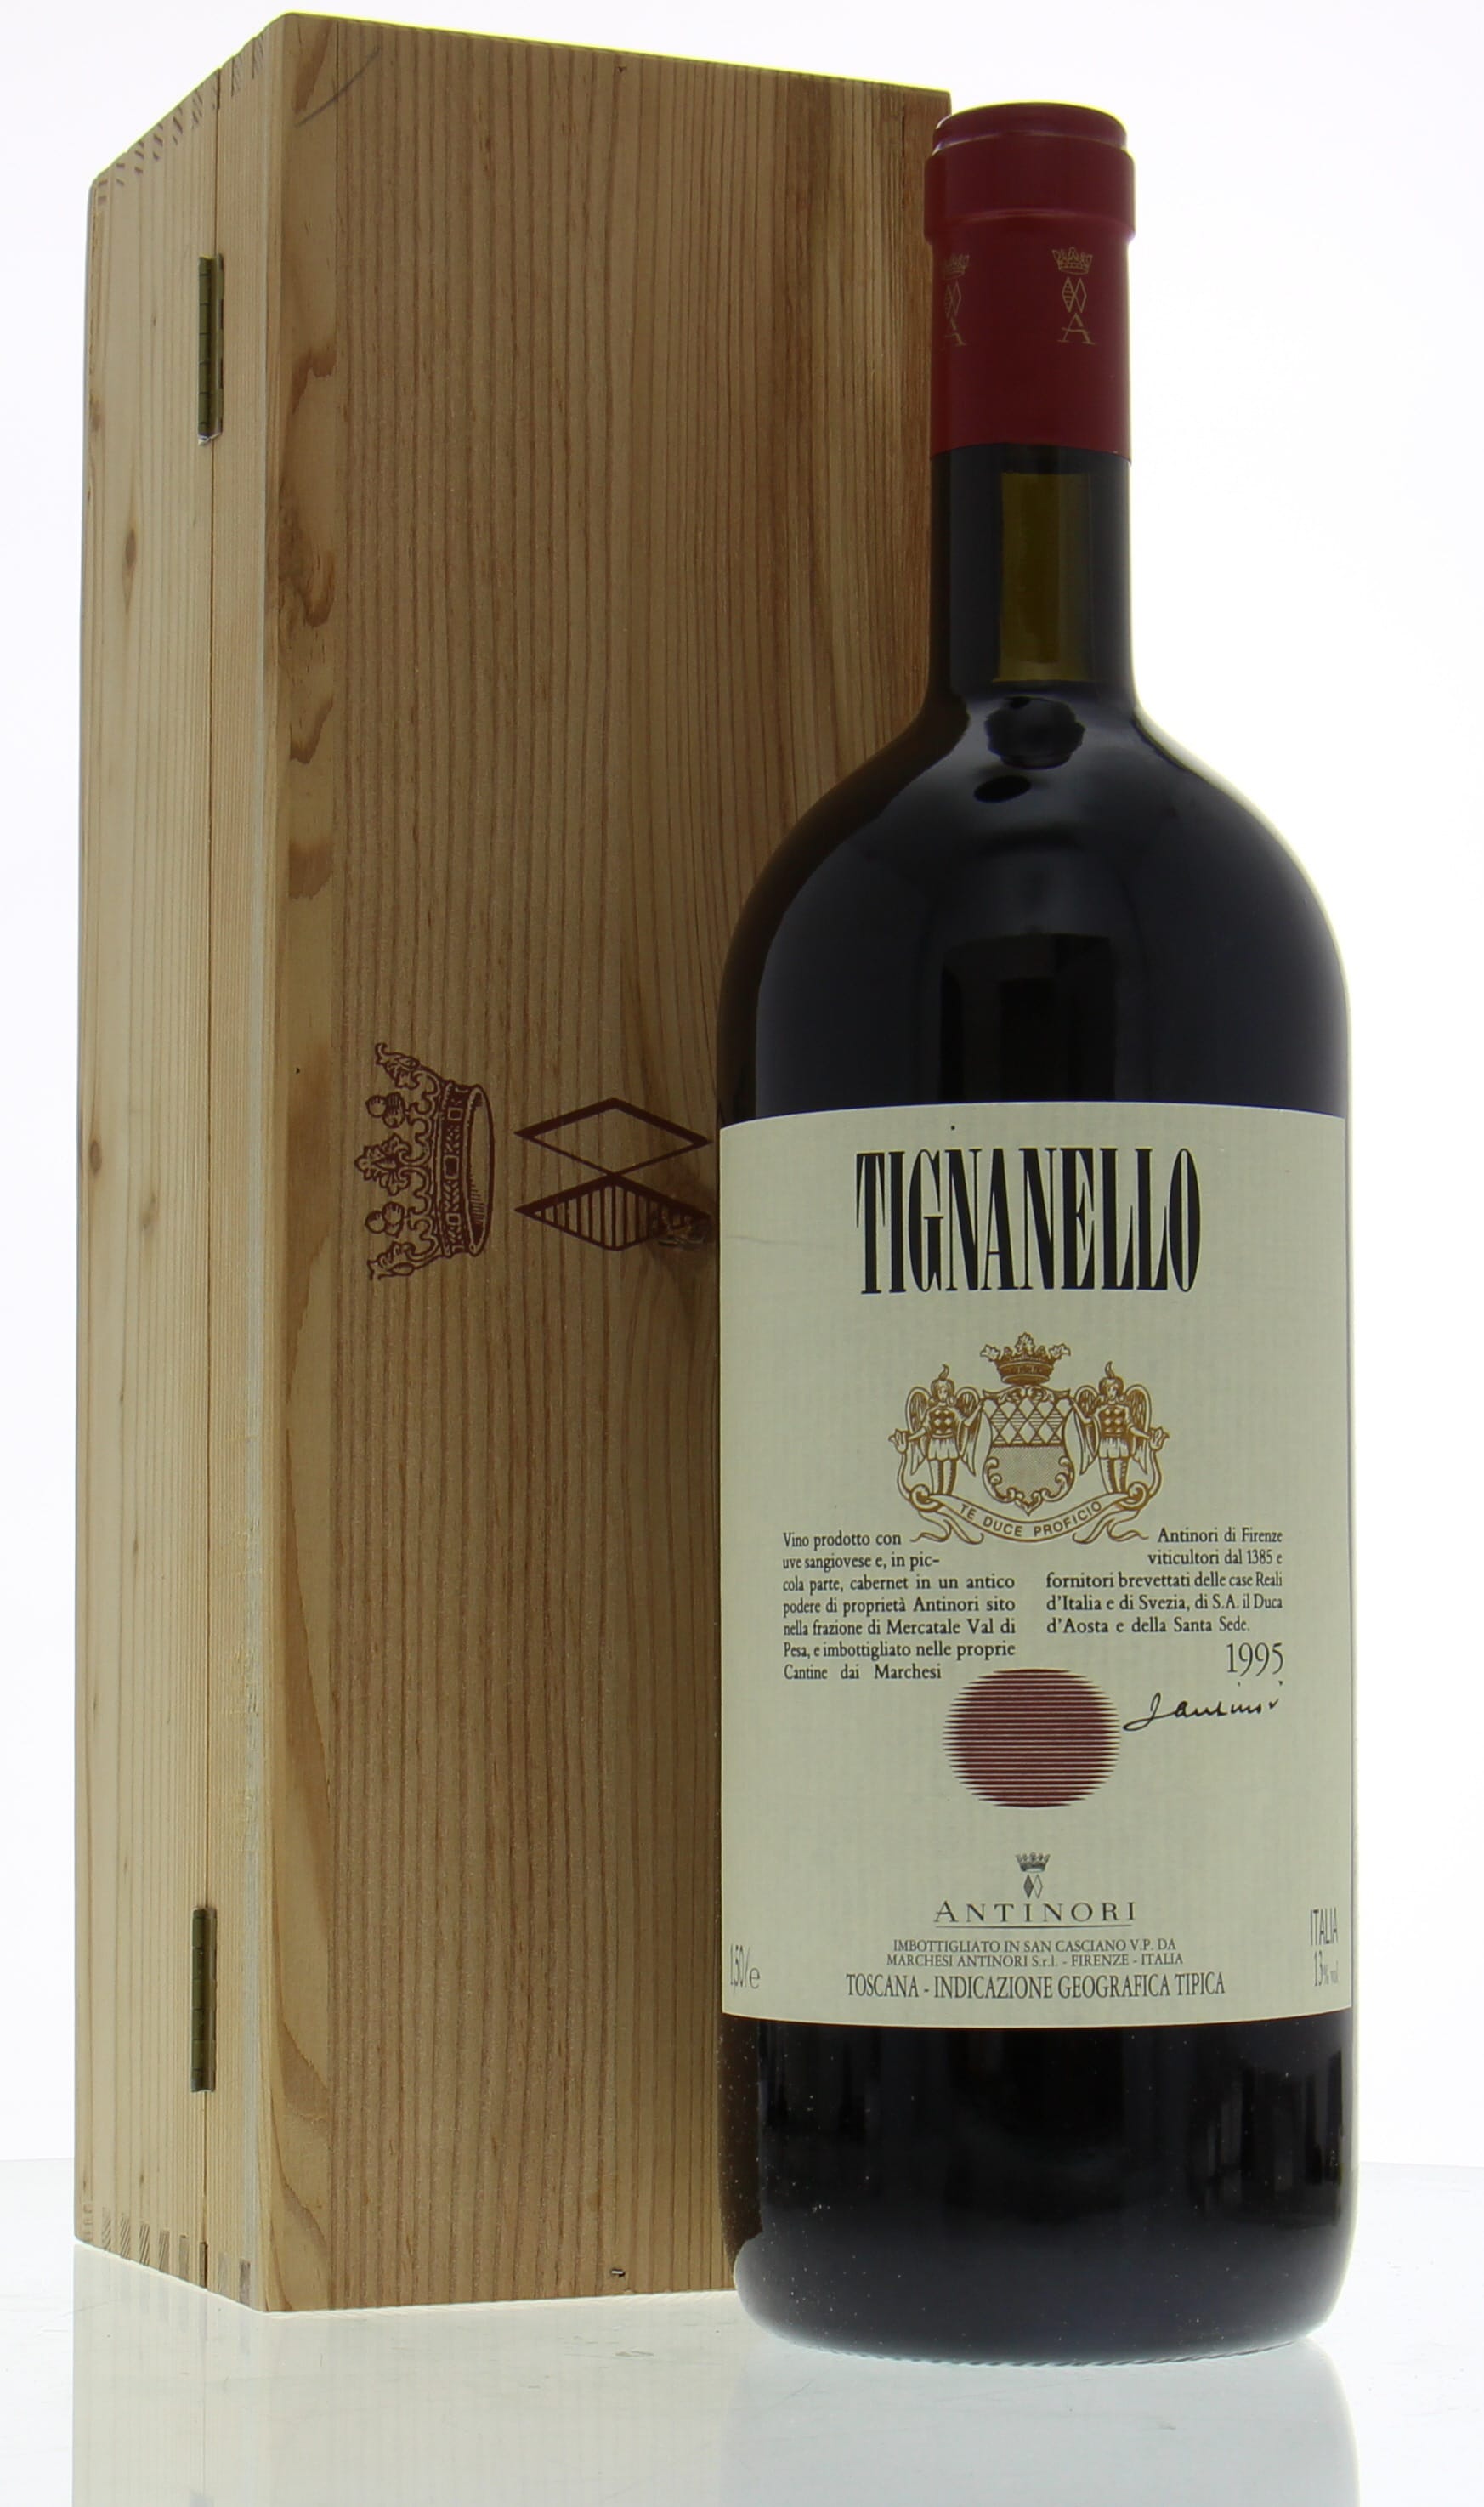 Antinori - Tignanello 1995